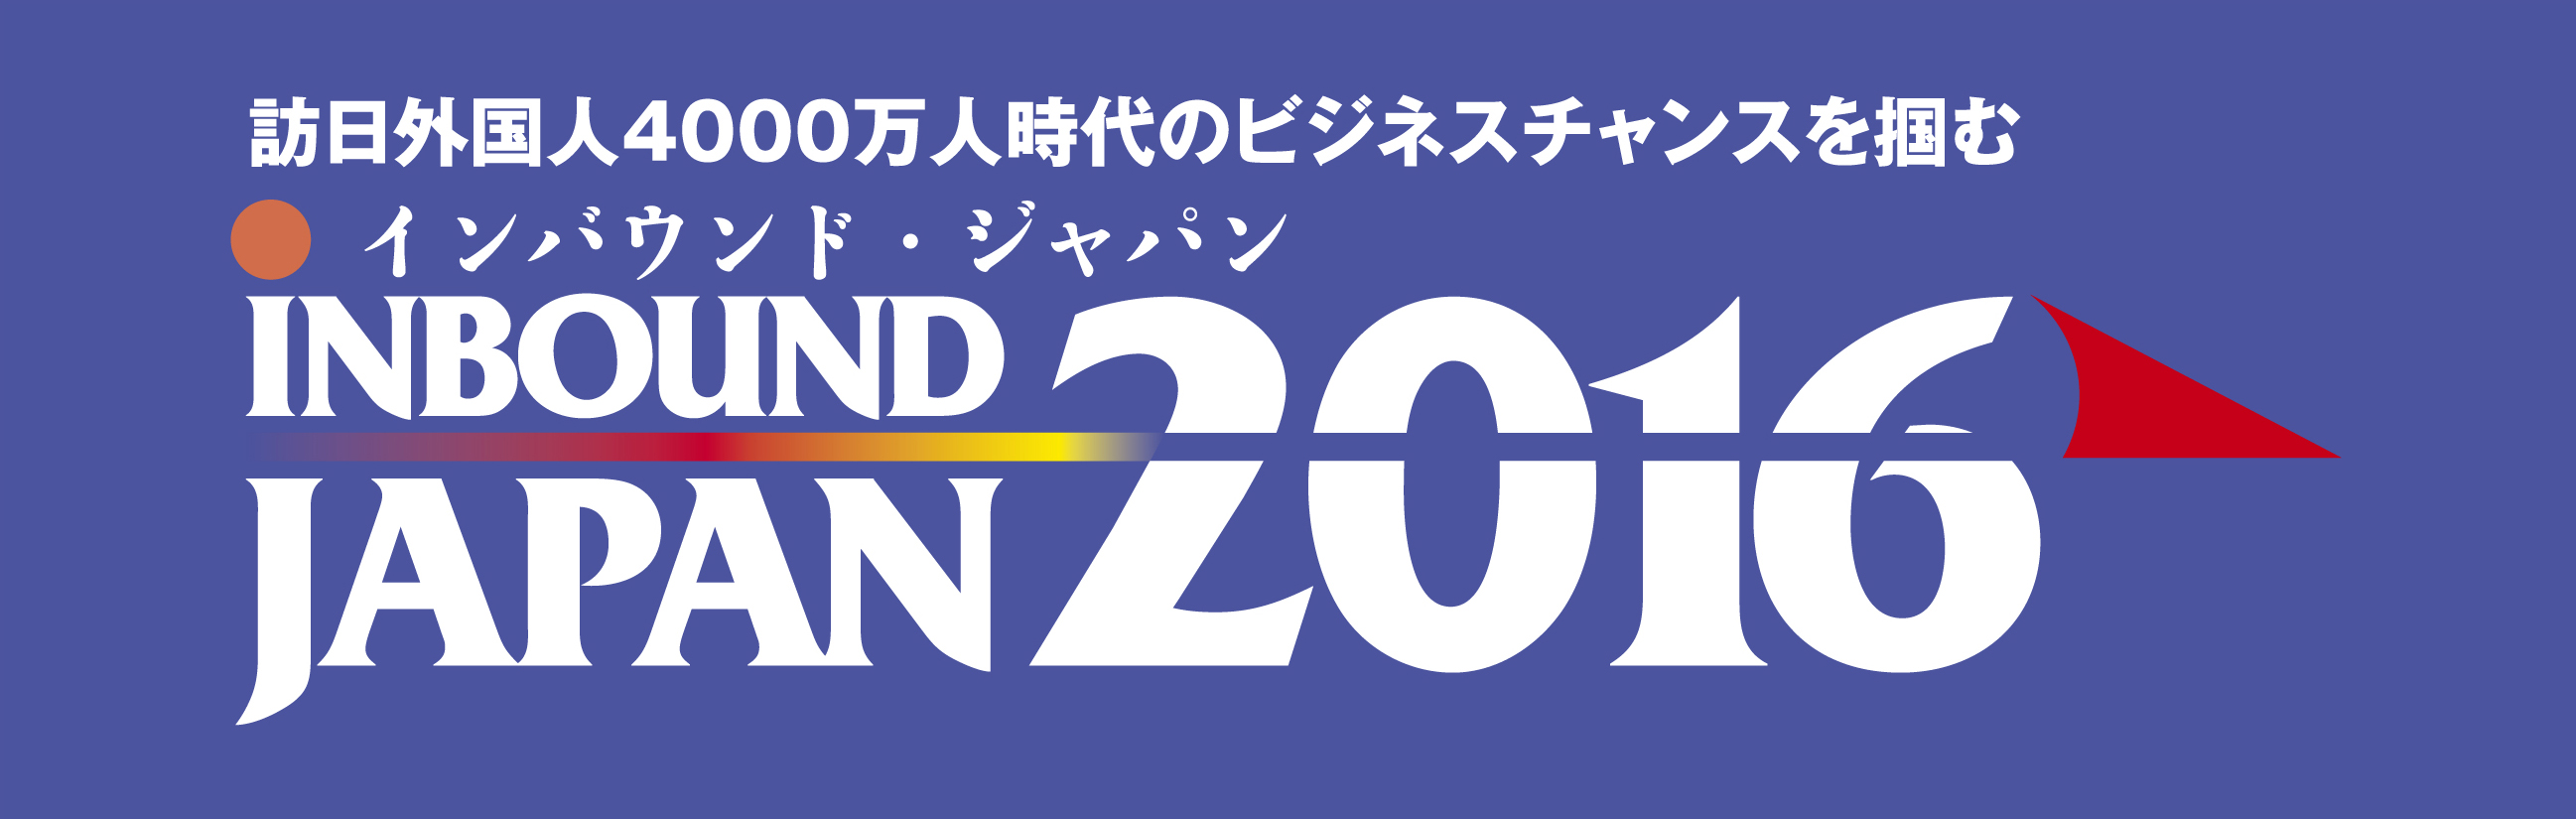 インバウンド･ジャパン2016ヘッダー画像